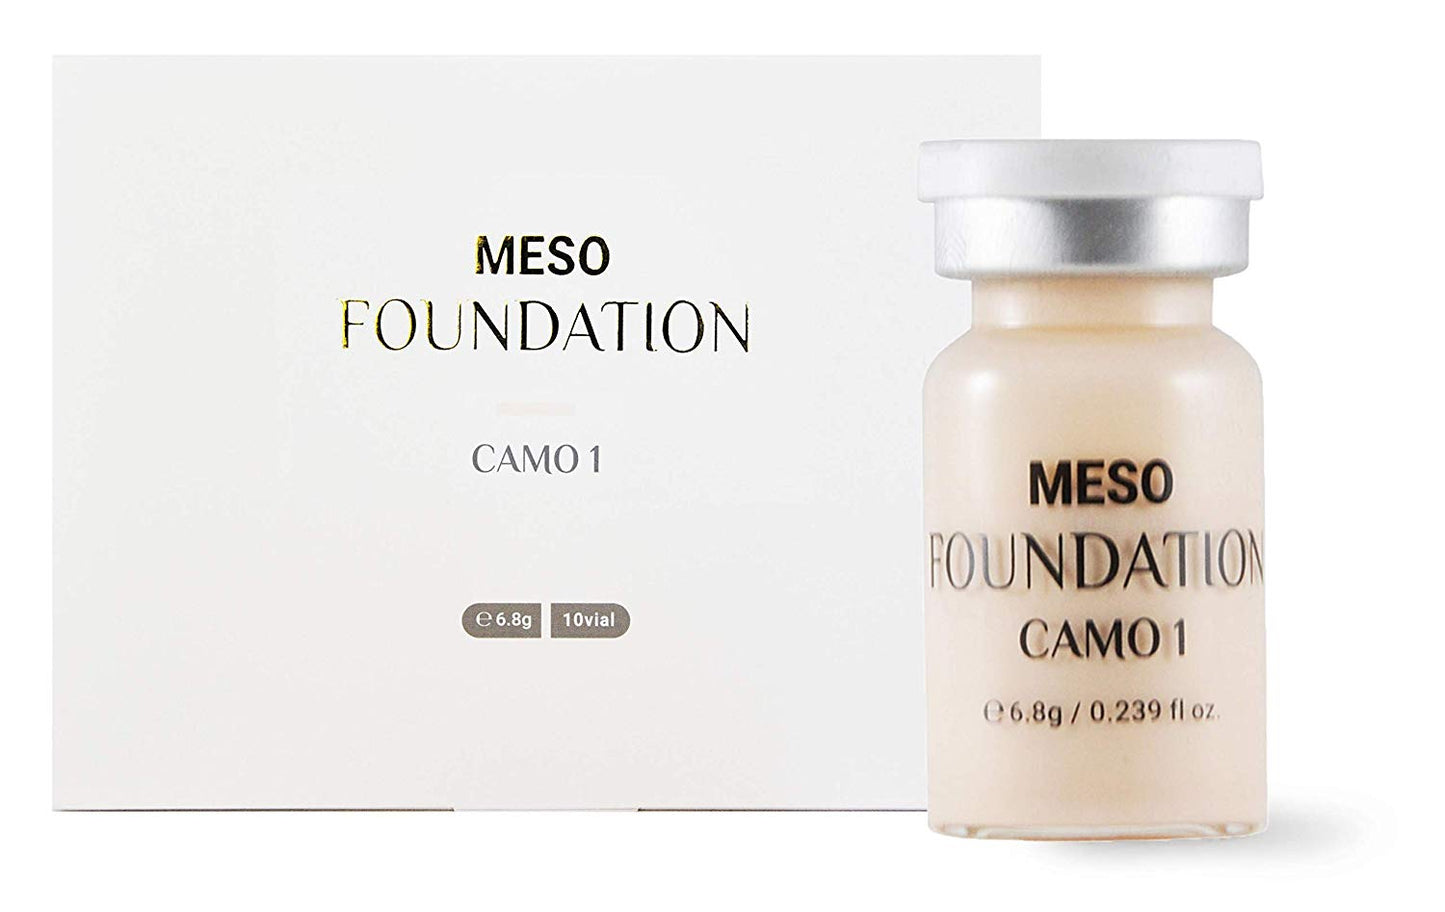 Meso Foundation - Camo 1 (10 pk)